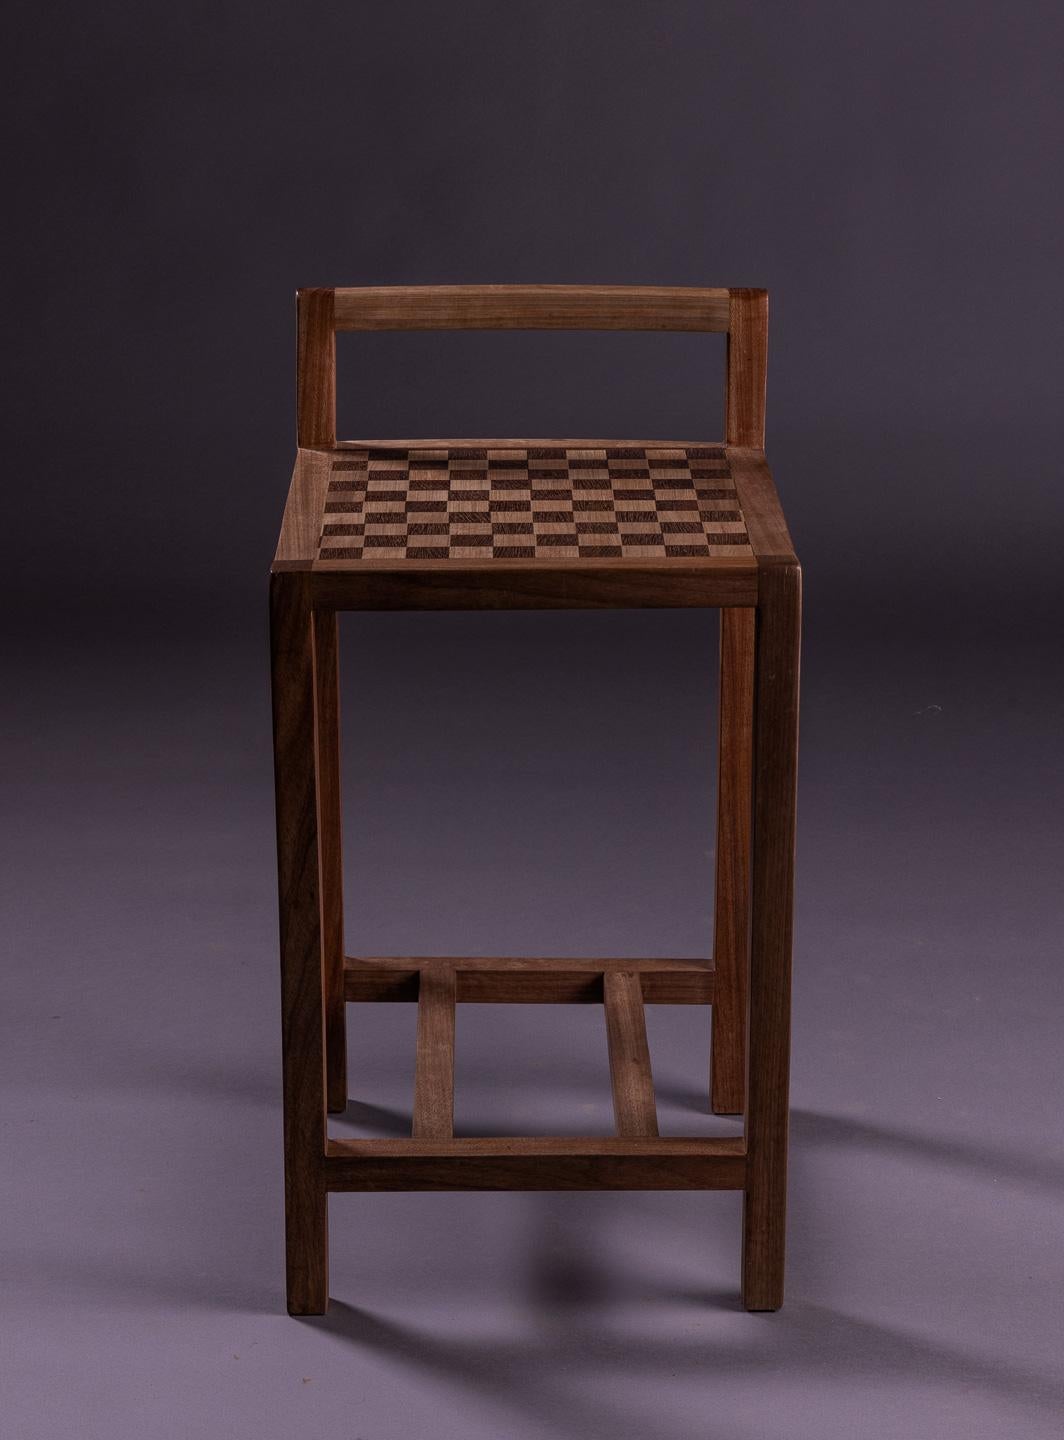 Le charmant tabouret Jojo est doté d'une assise en marqueterie à carreaux, habilement travaillée avec les bois nobles Jequitibá et Sucupira. Sa structure robuste est également fabriquée en Jequitibá de haute qualité, ce qui lui confère durabilité et